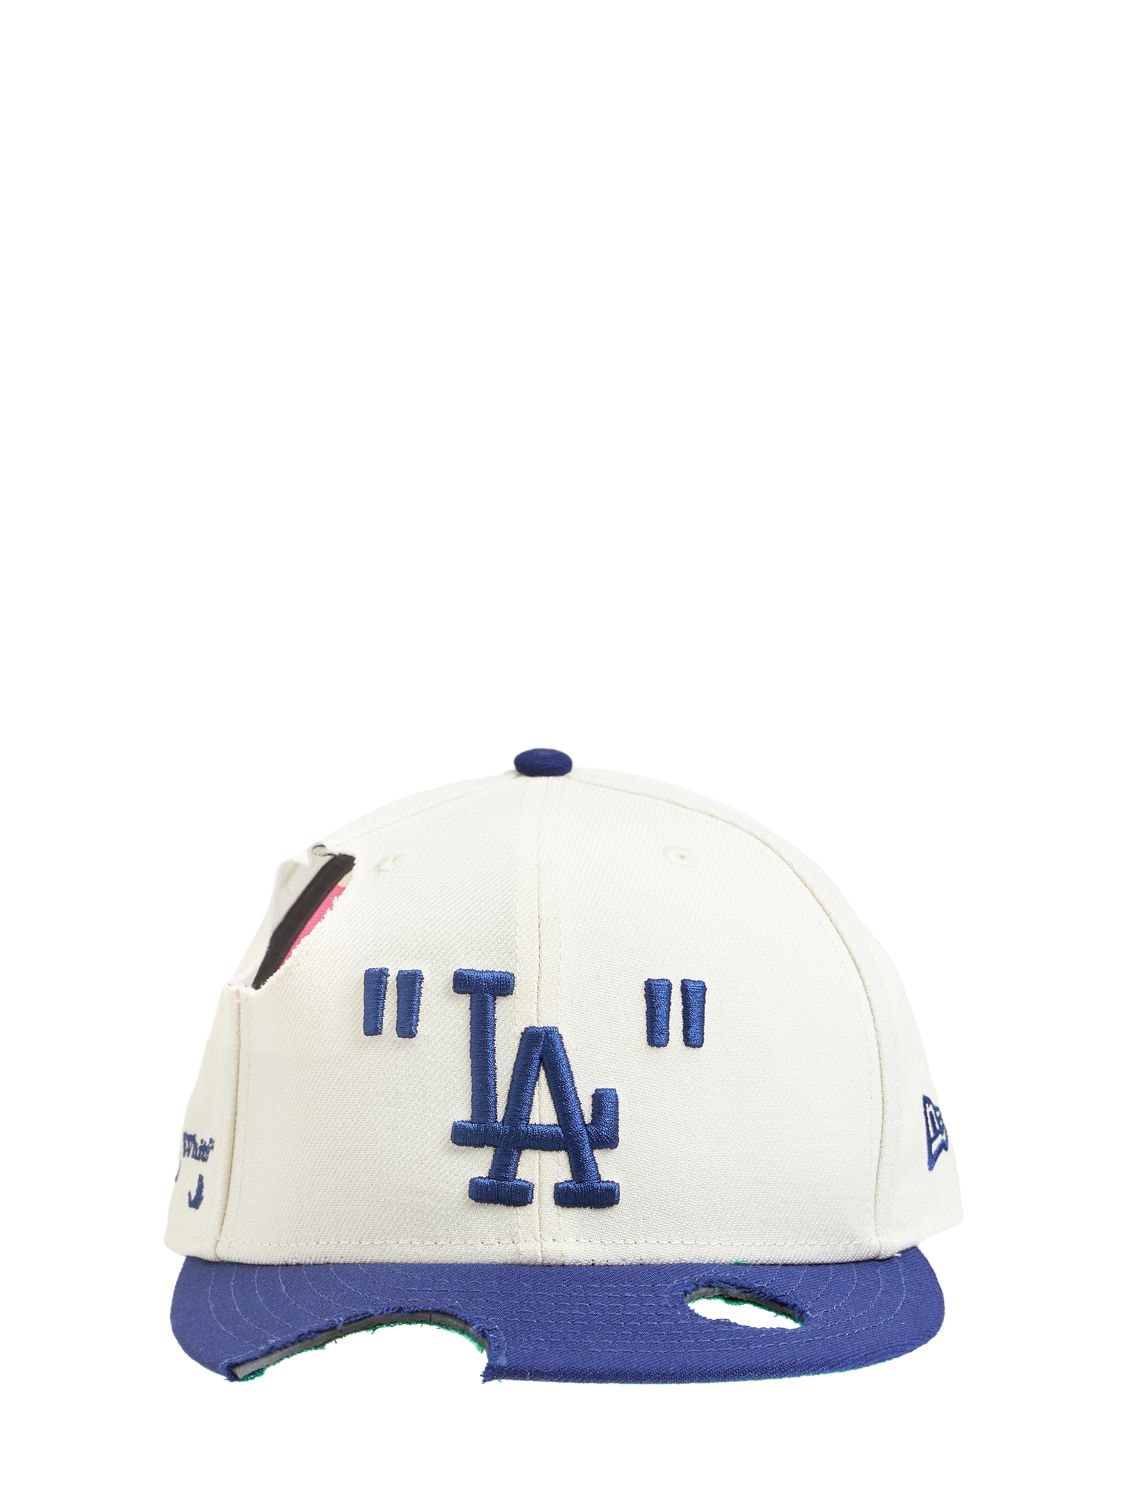 Off-white Mlb La Dodgers Wool Blend Baseball Cap